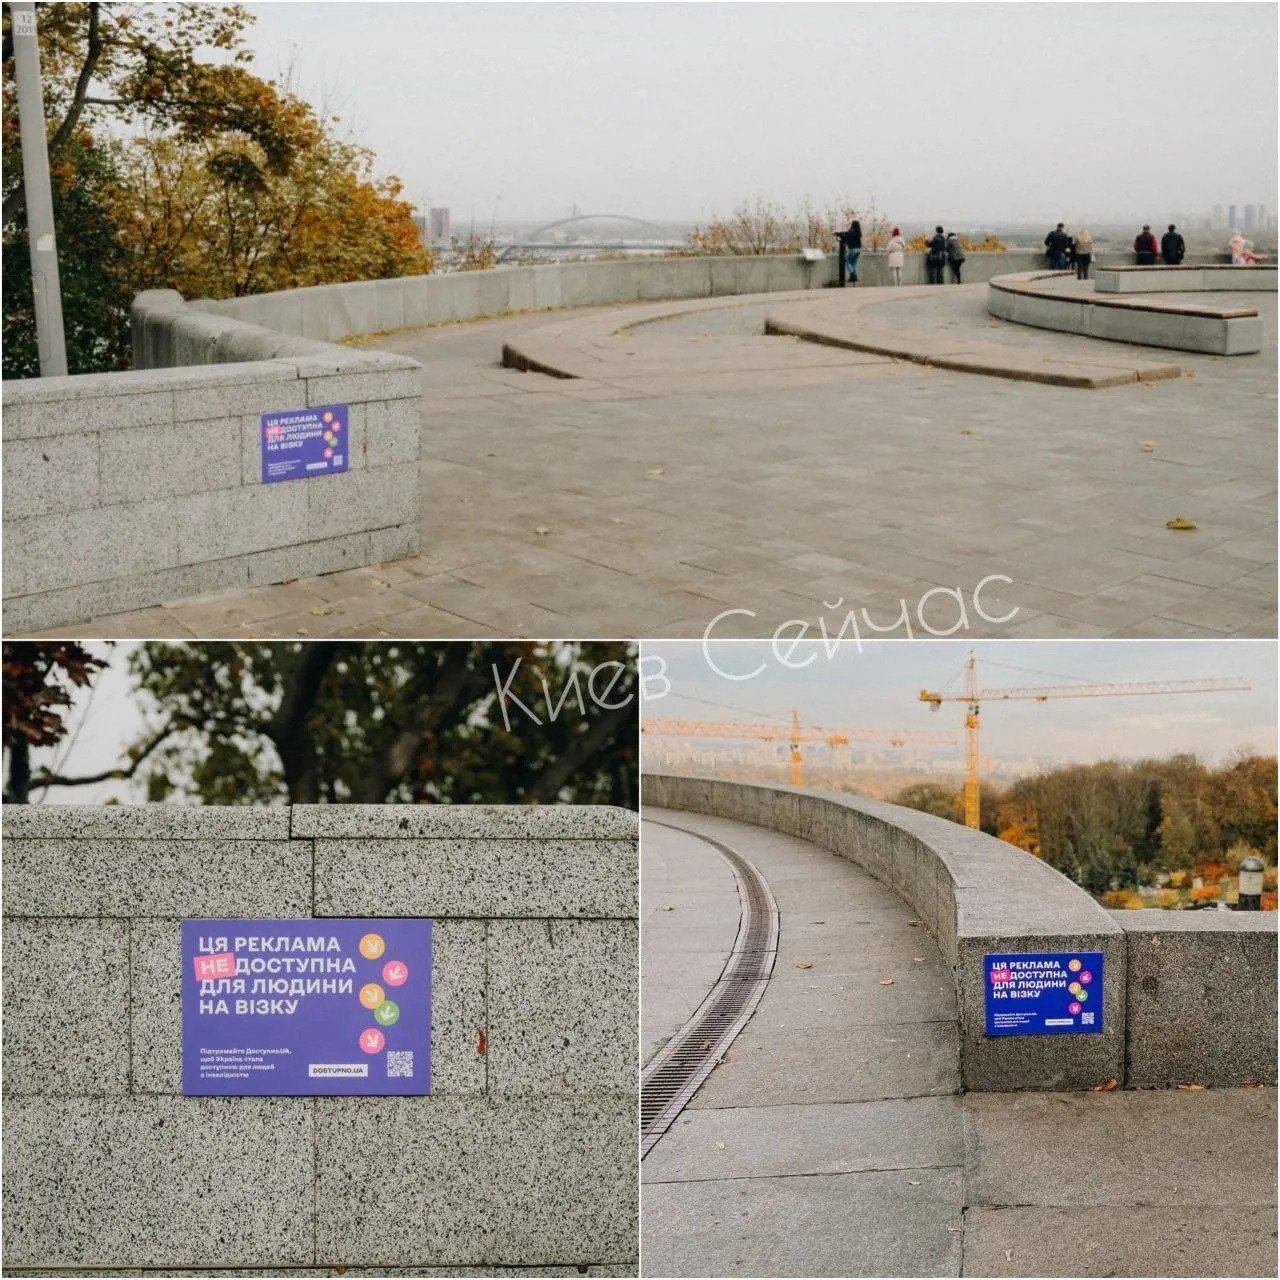 реклама, не доступна для інвалідів у Києві